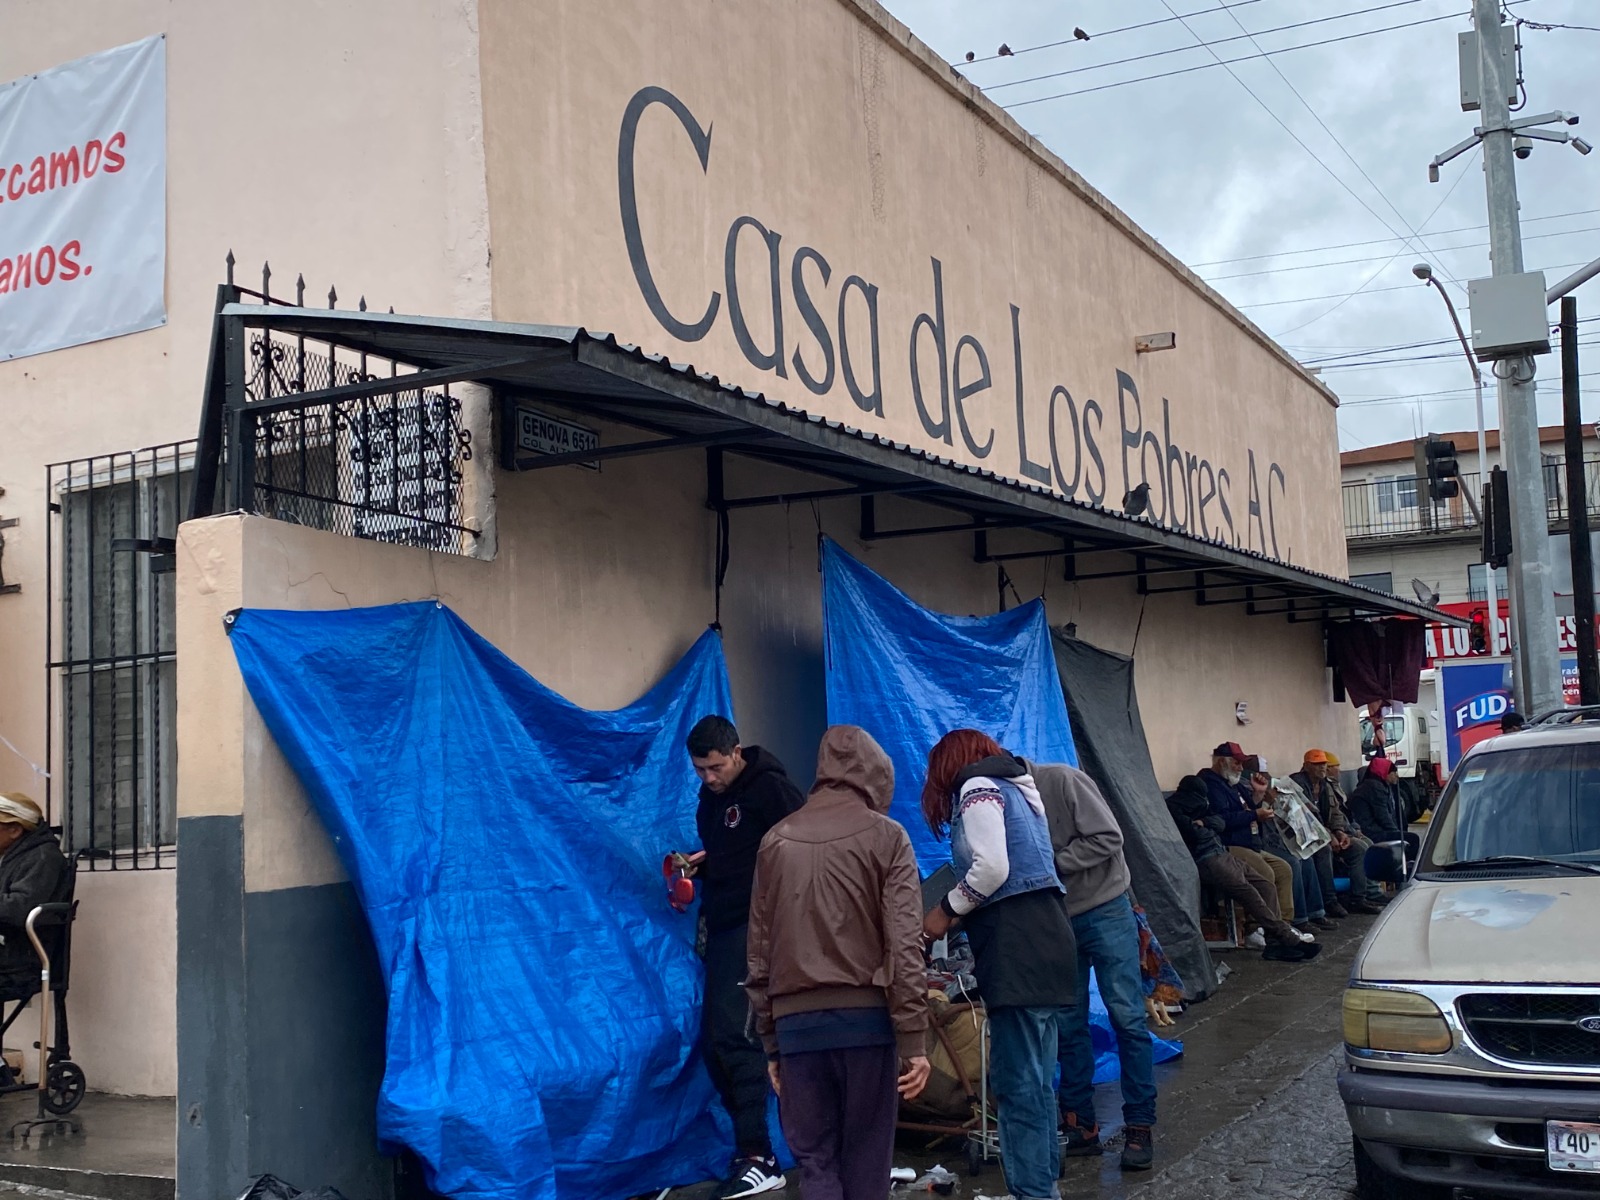 Migrantes acampan afuera de la Casa de los Pobres en Tijuana, México. (Foto: cortesía Clara Malo)